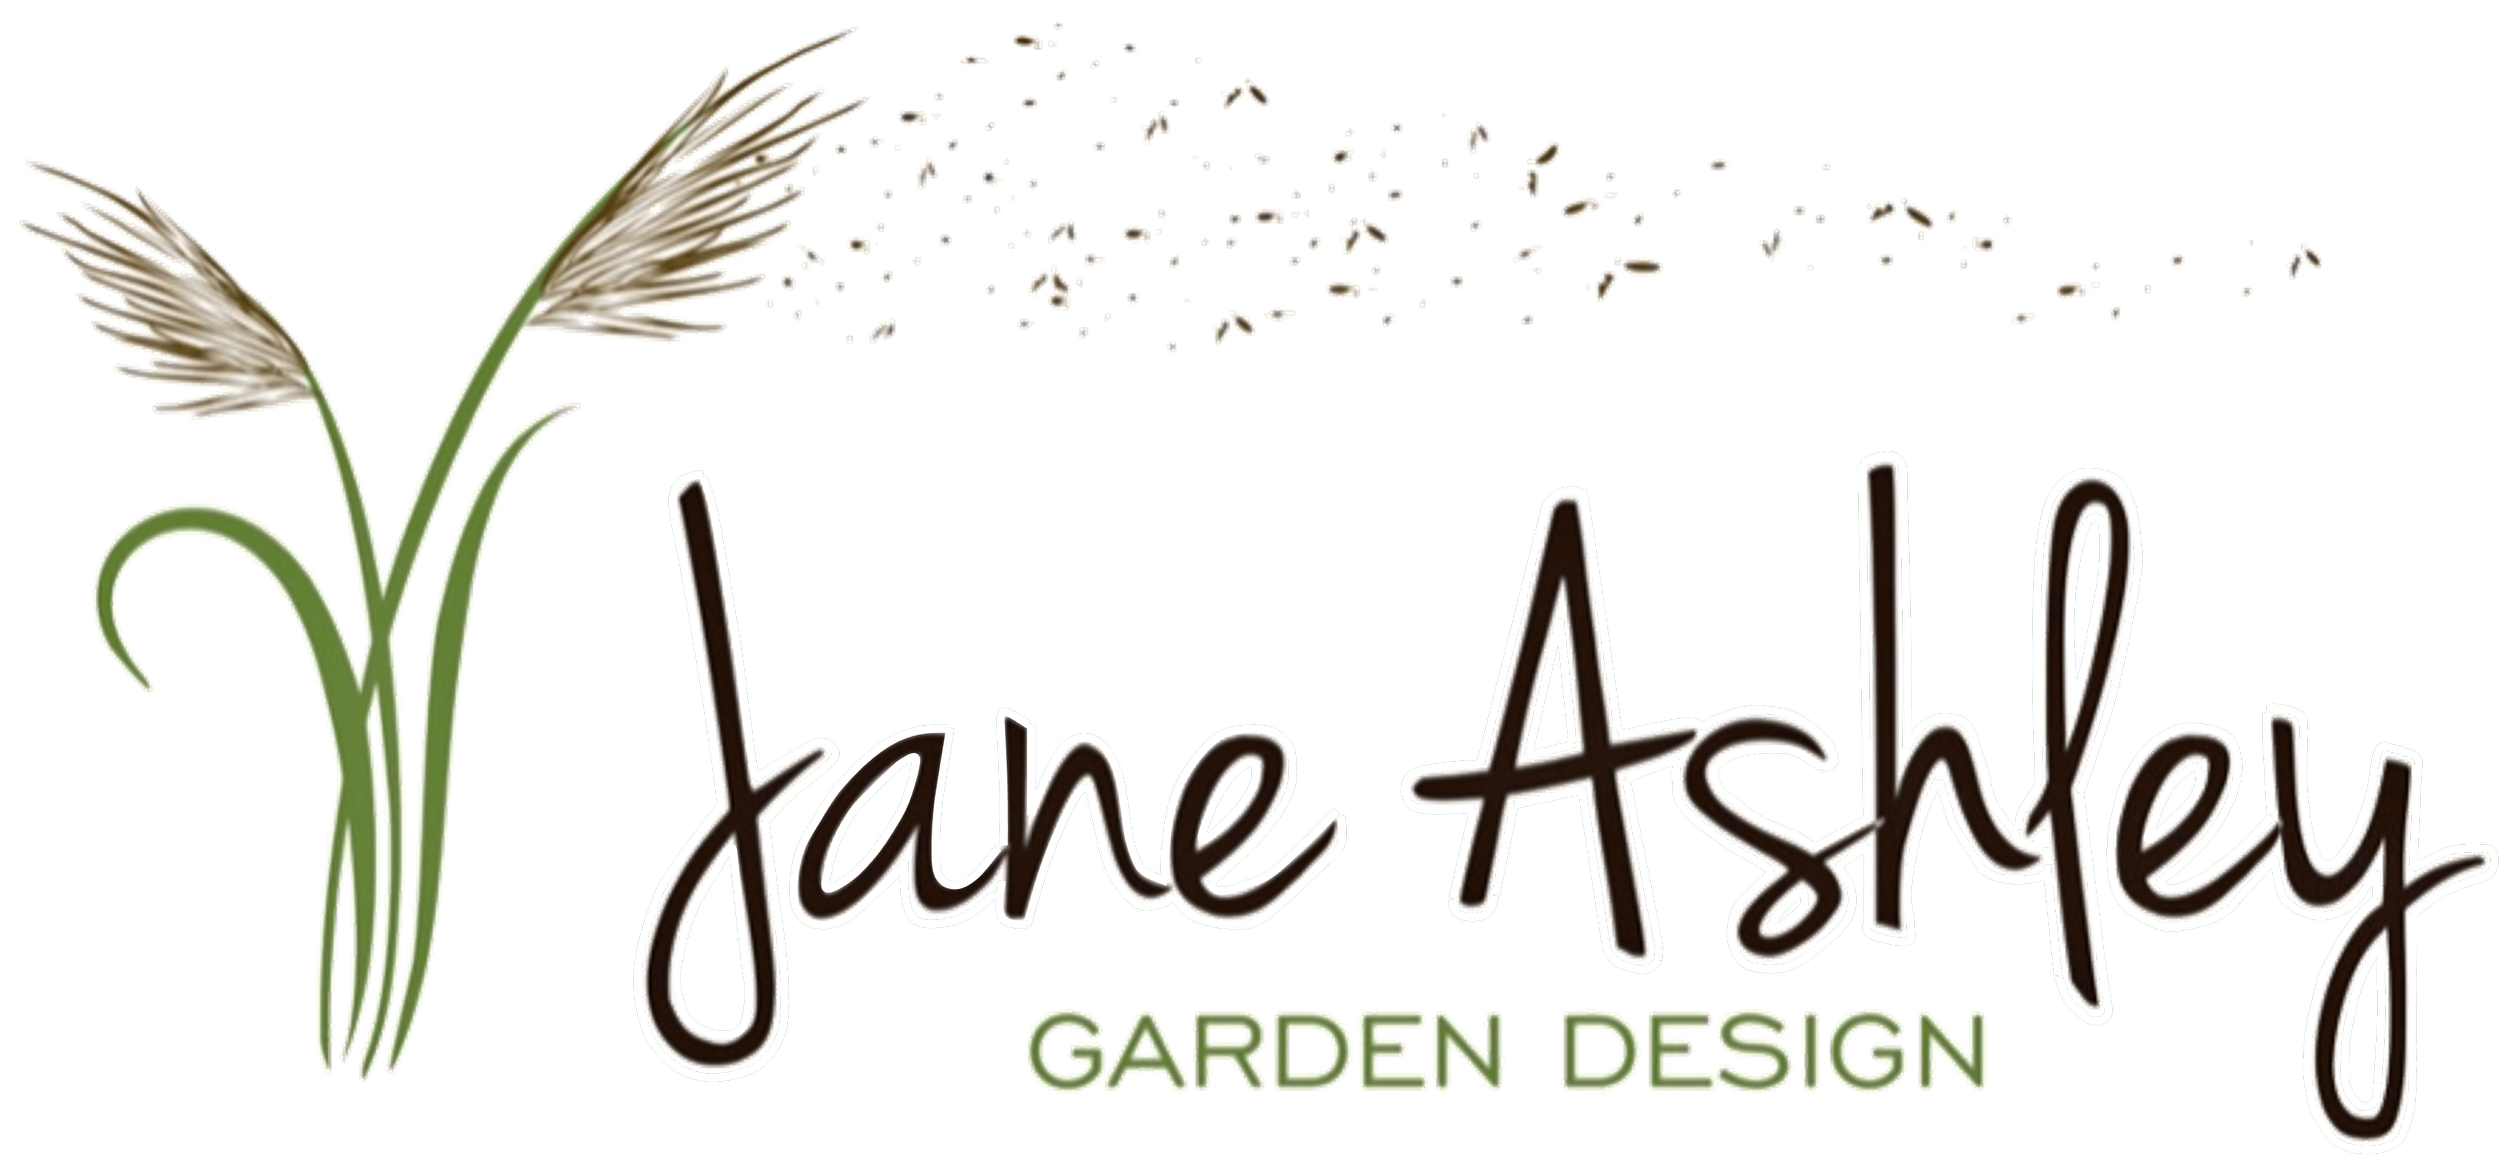 Jane Ashley Garden Design   Award Winning Garden Designer in West ...